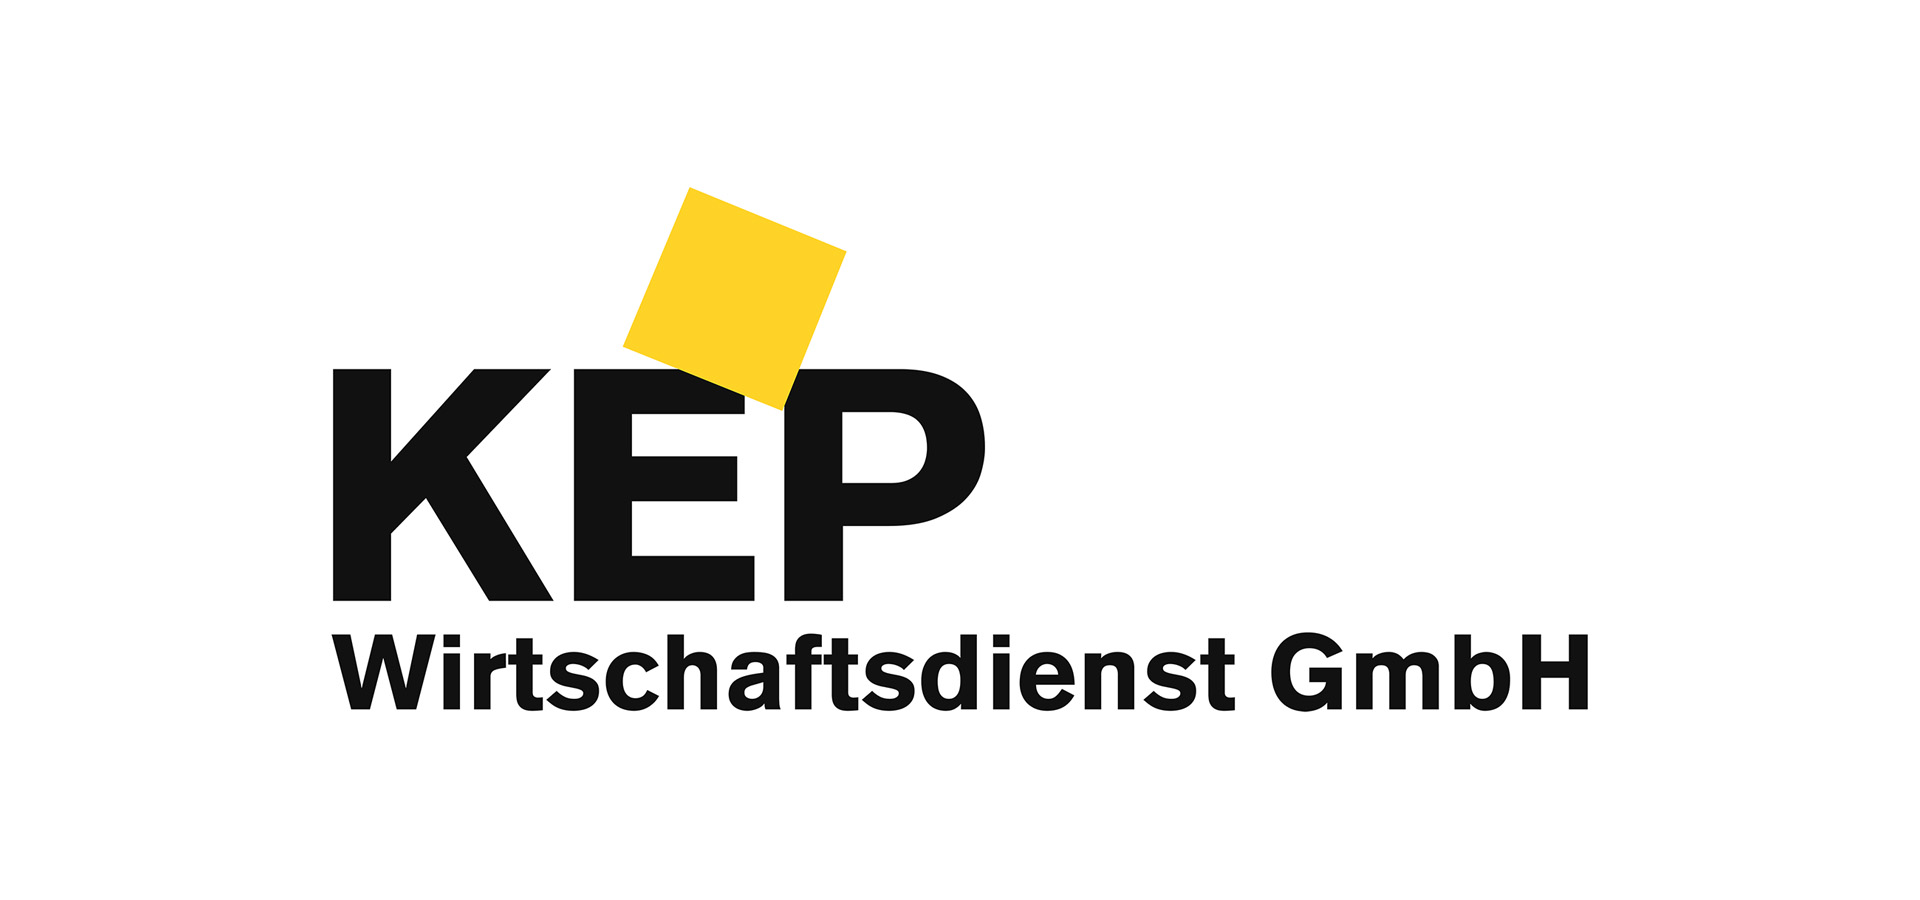 KEP Wirtschaftsdienst GmbH